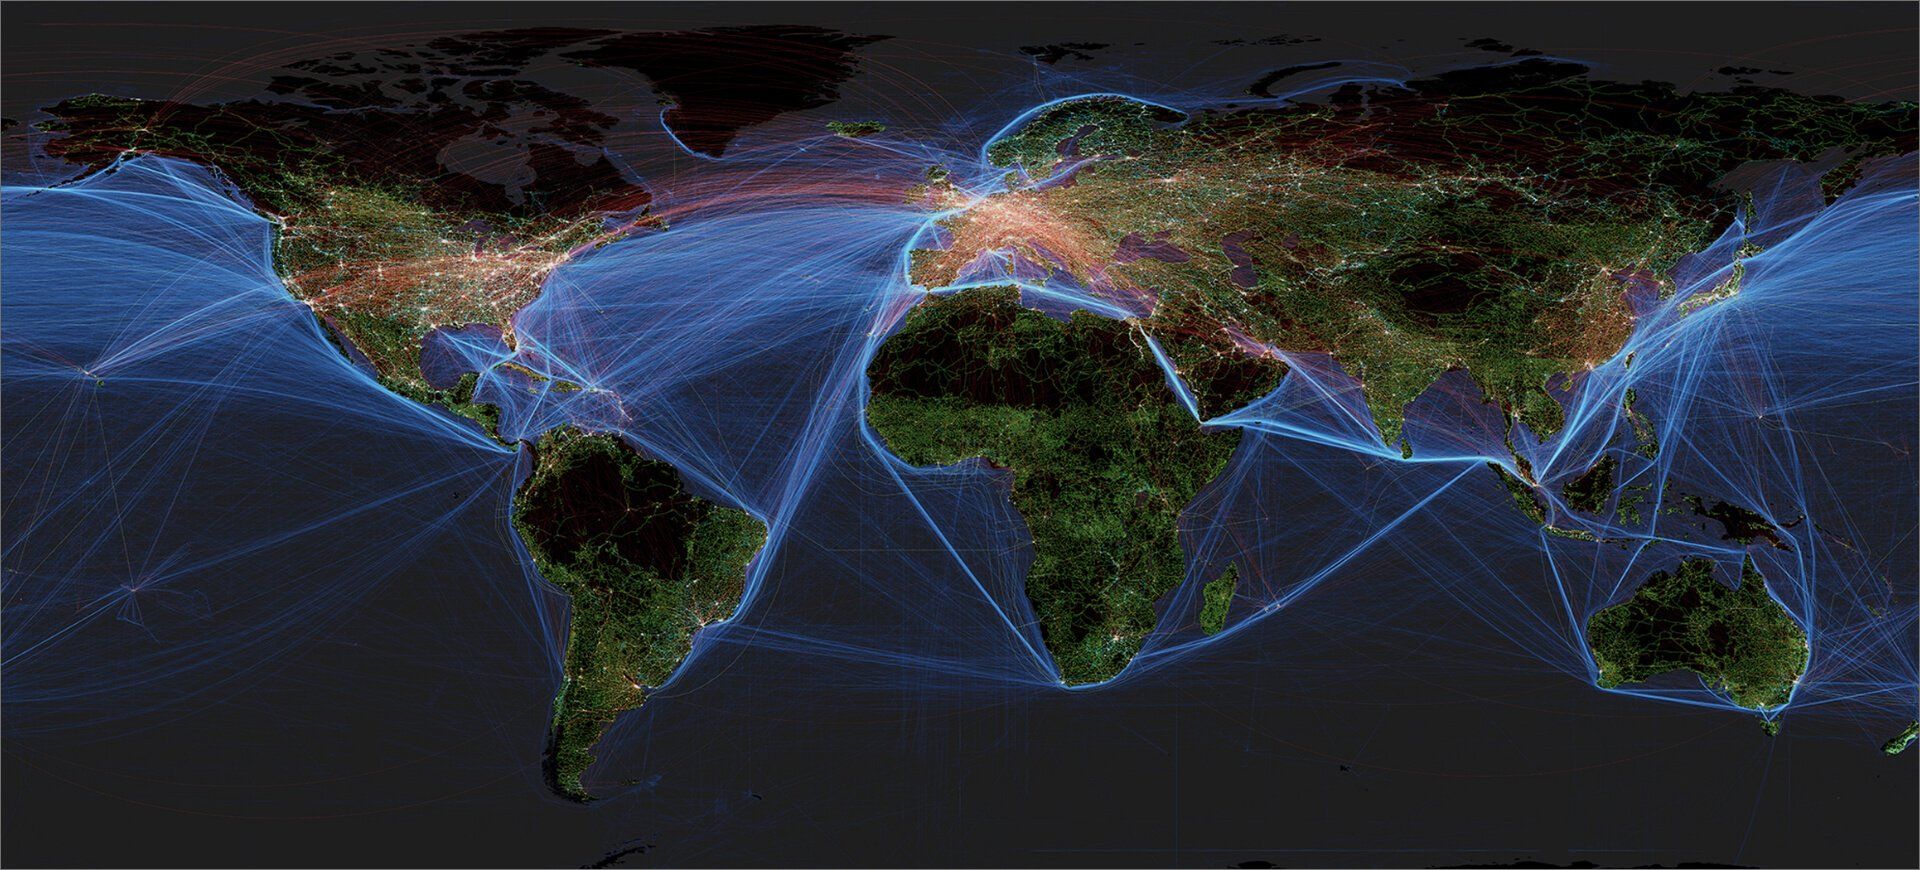 Weltkarte mit Handels- und Transportrouten weltweit